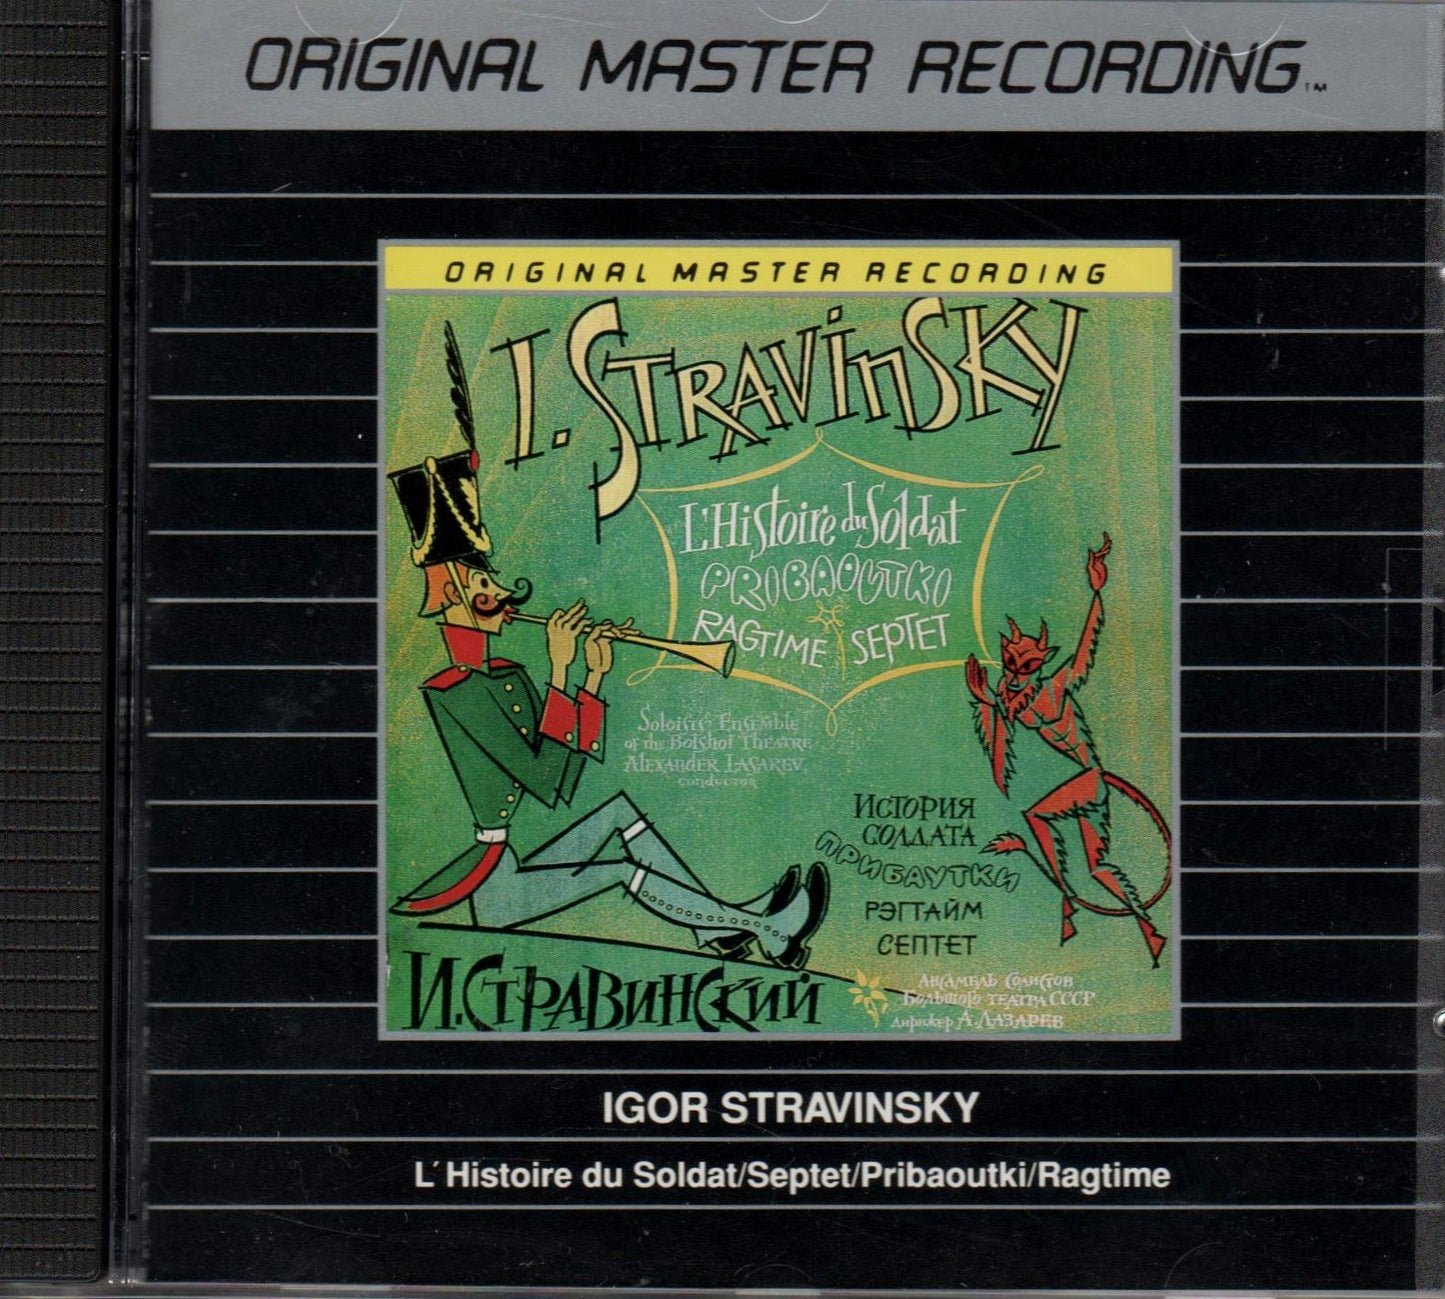 Stravinsky: L'Histoire du Soldat / Septet / Pribaoukti / Ragtime (Original Master Recording)